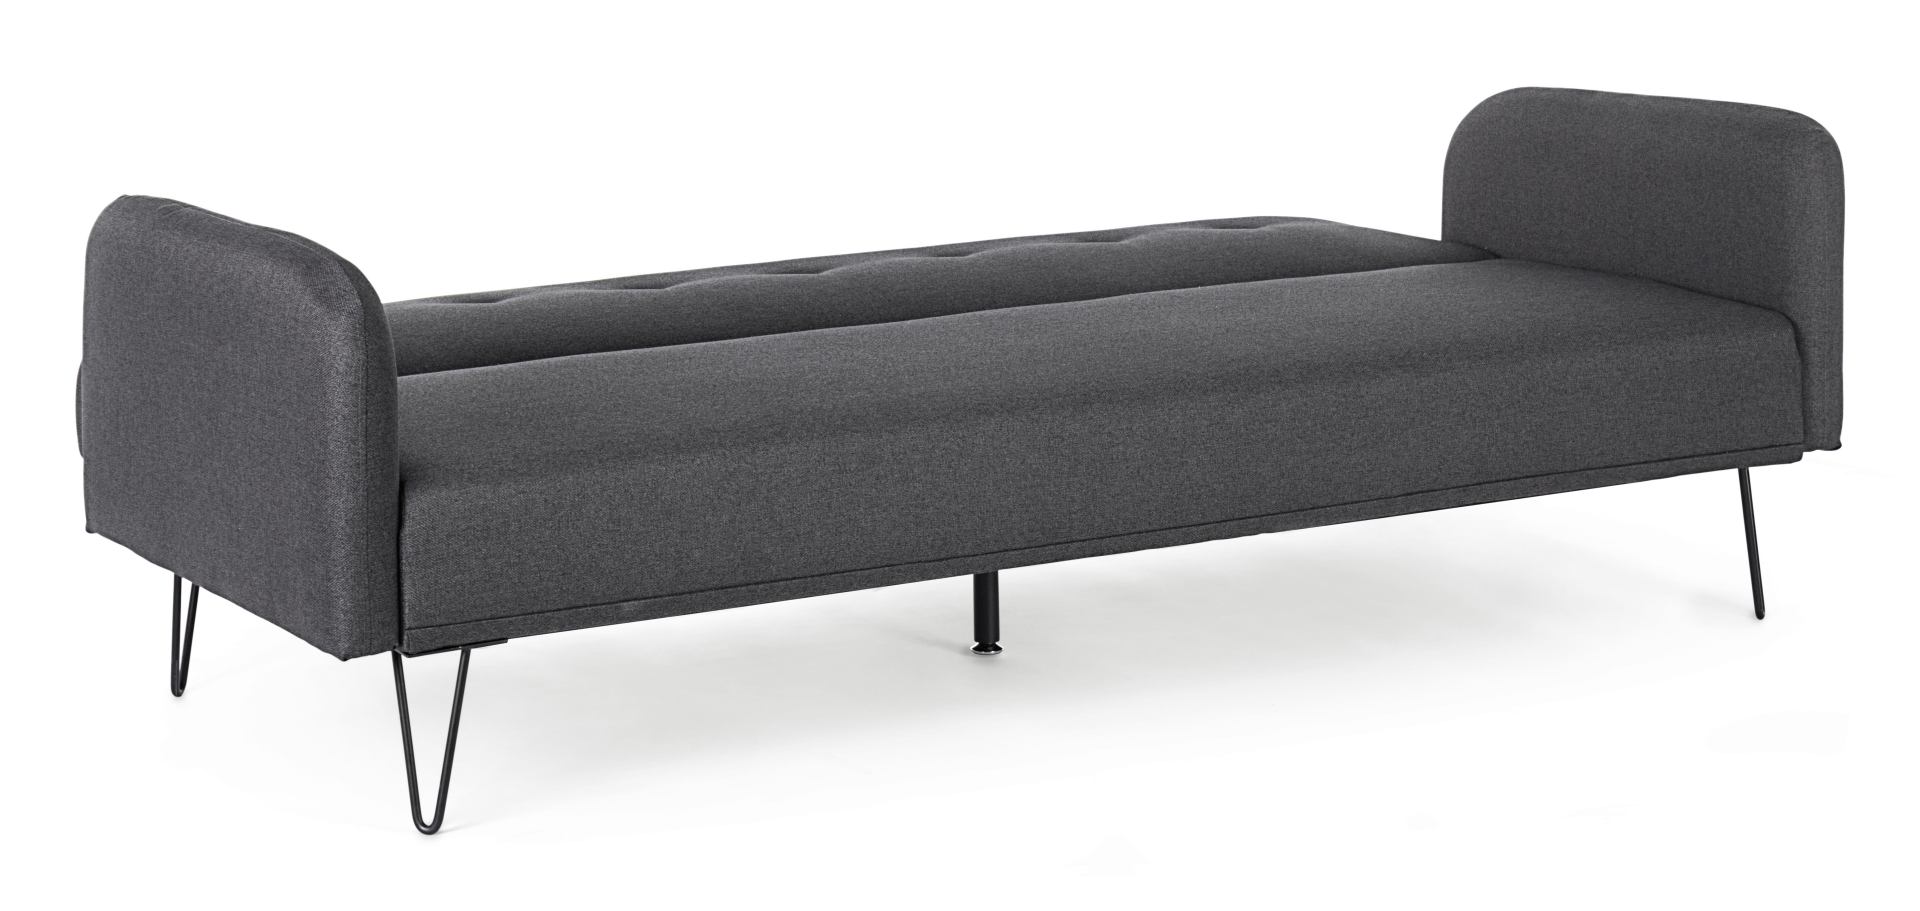 Das Schlafsofa Bridjet überzeugt mit seinem klassischen Design. Gefertigt wurde es aus Stoff, welcher einen schwarzen Farbton besitzt. Das Gestell ist aus Metall und hat eine schwarzen Farbe. Die Schlaffunktion hat ein Maß von 180x105 cm. Das Sofa ist in 